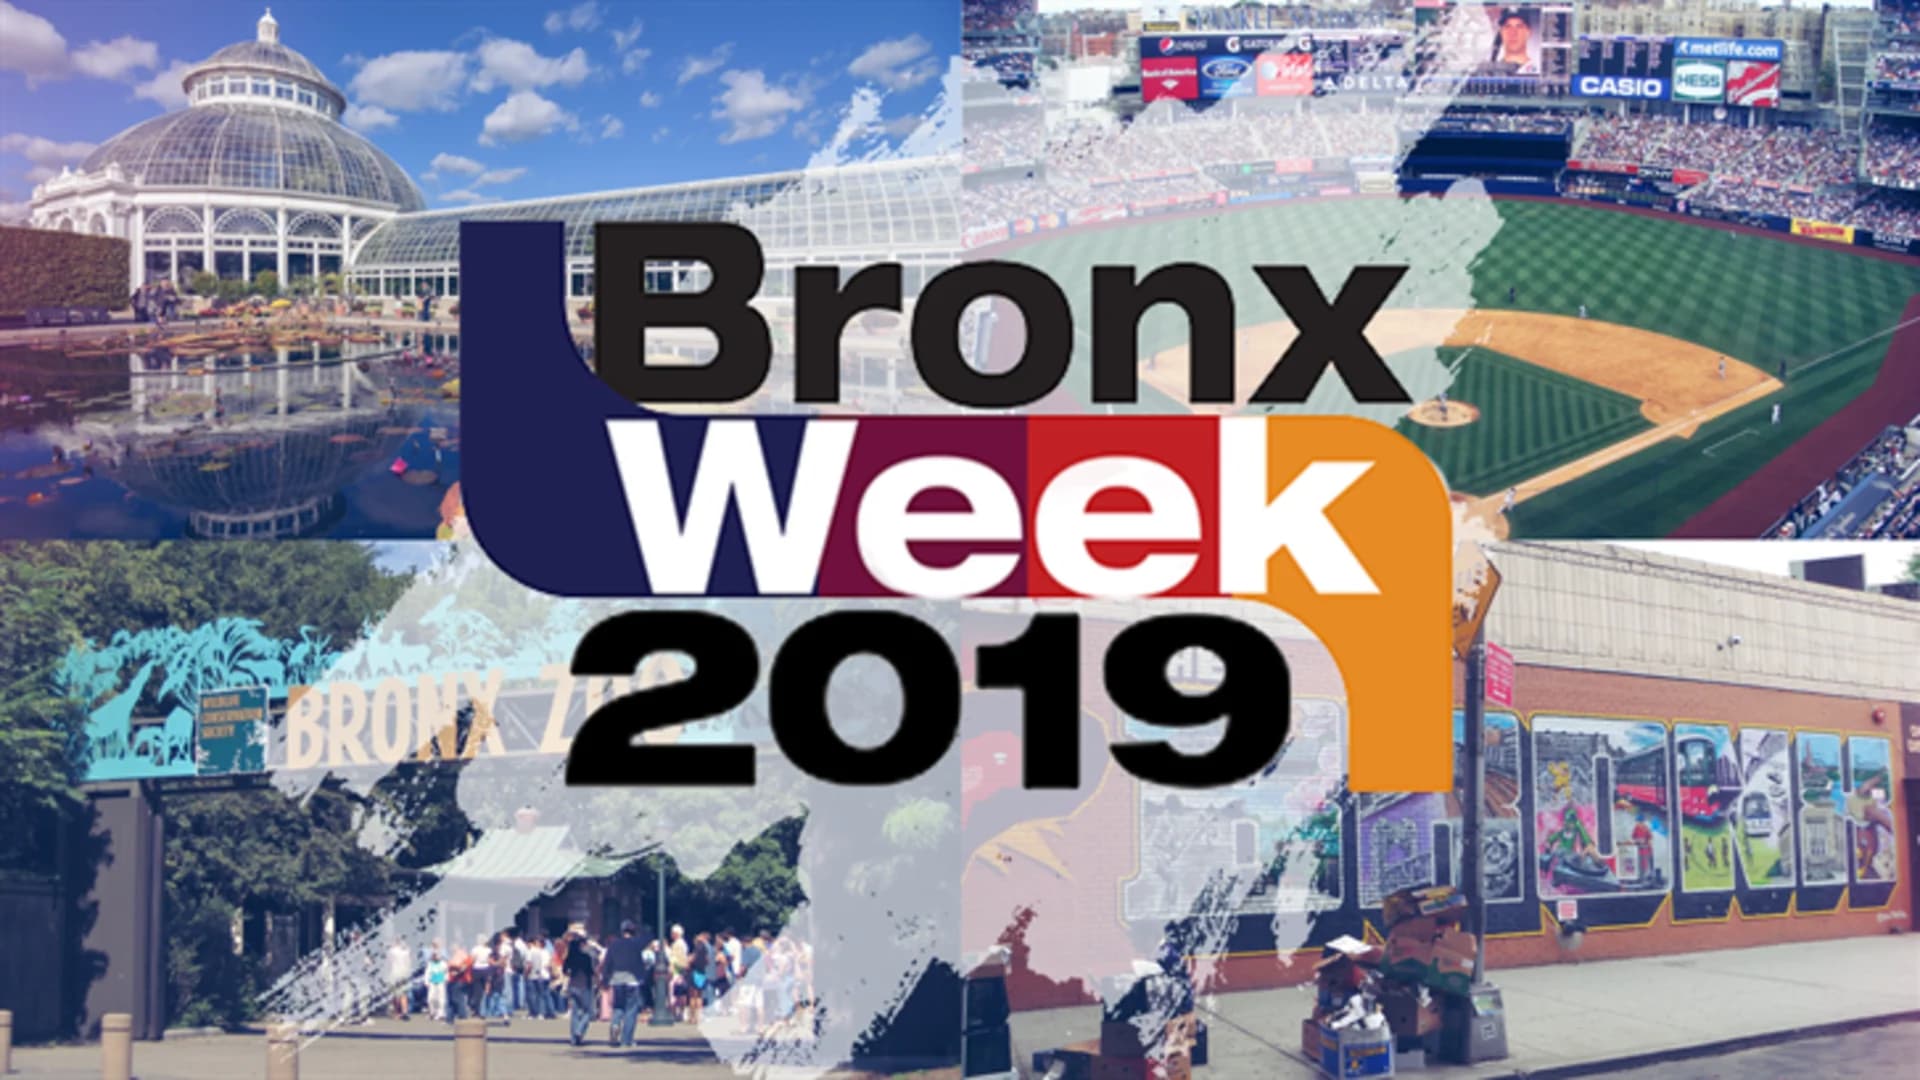 Bronx Week 2019 Numbers & Link